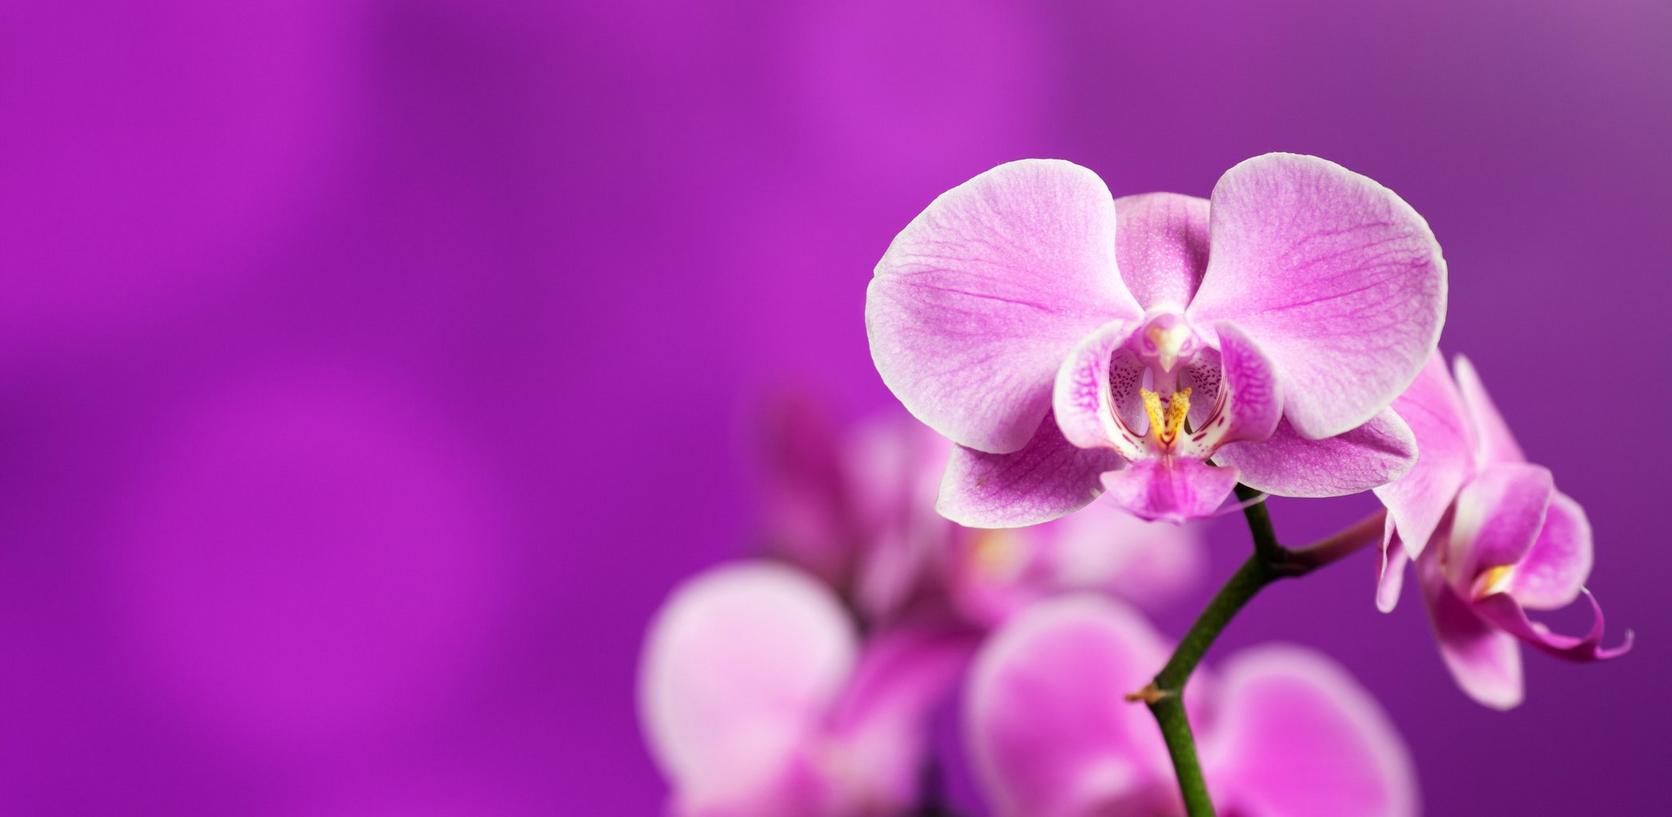 orchid-purple-flower